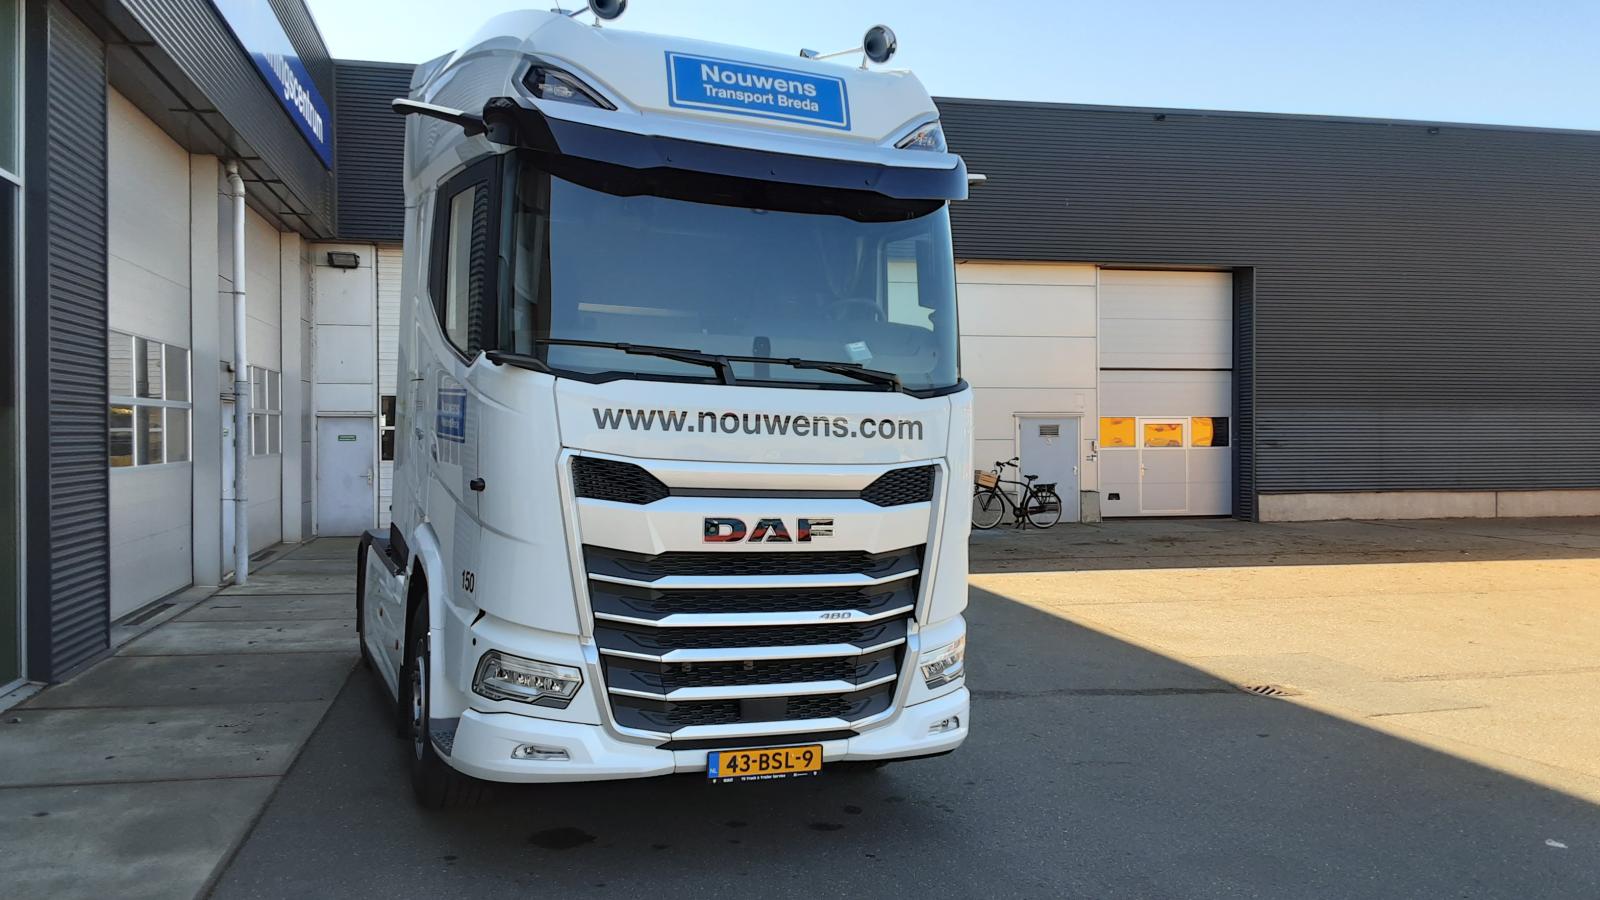 Nouwens Transport Breda B.V.